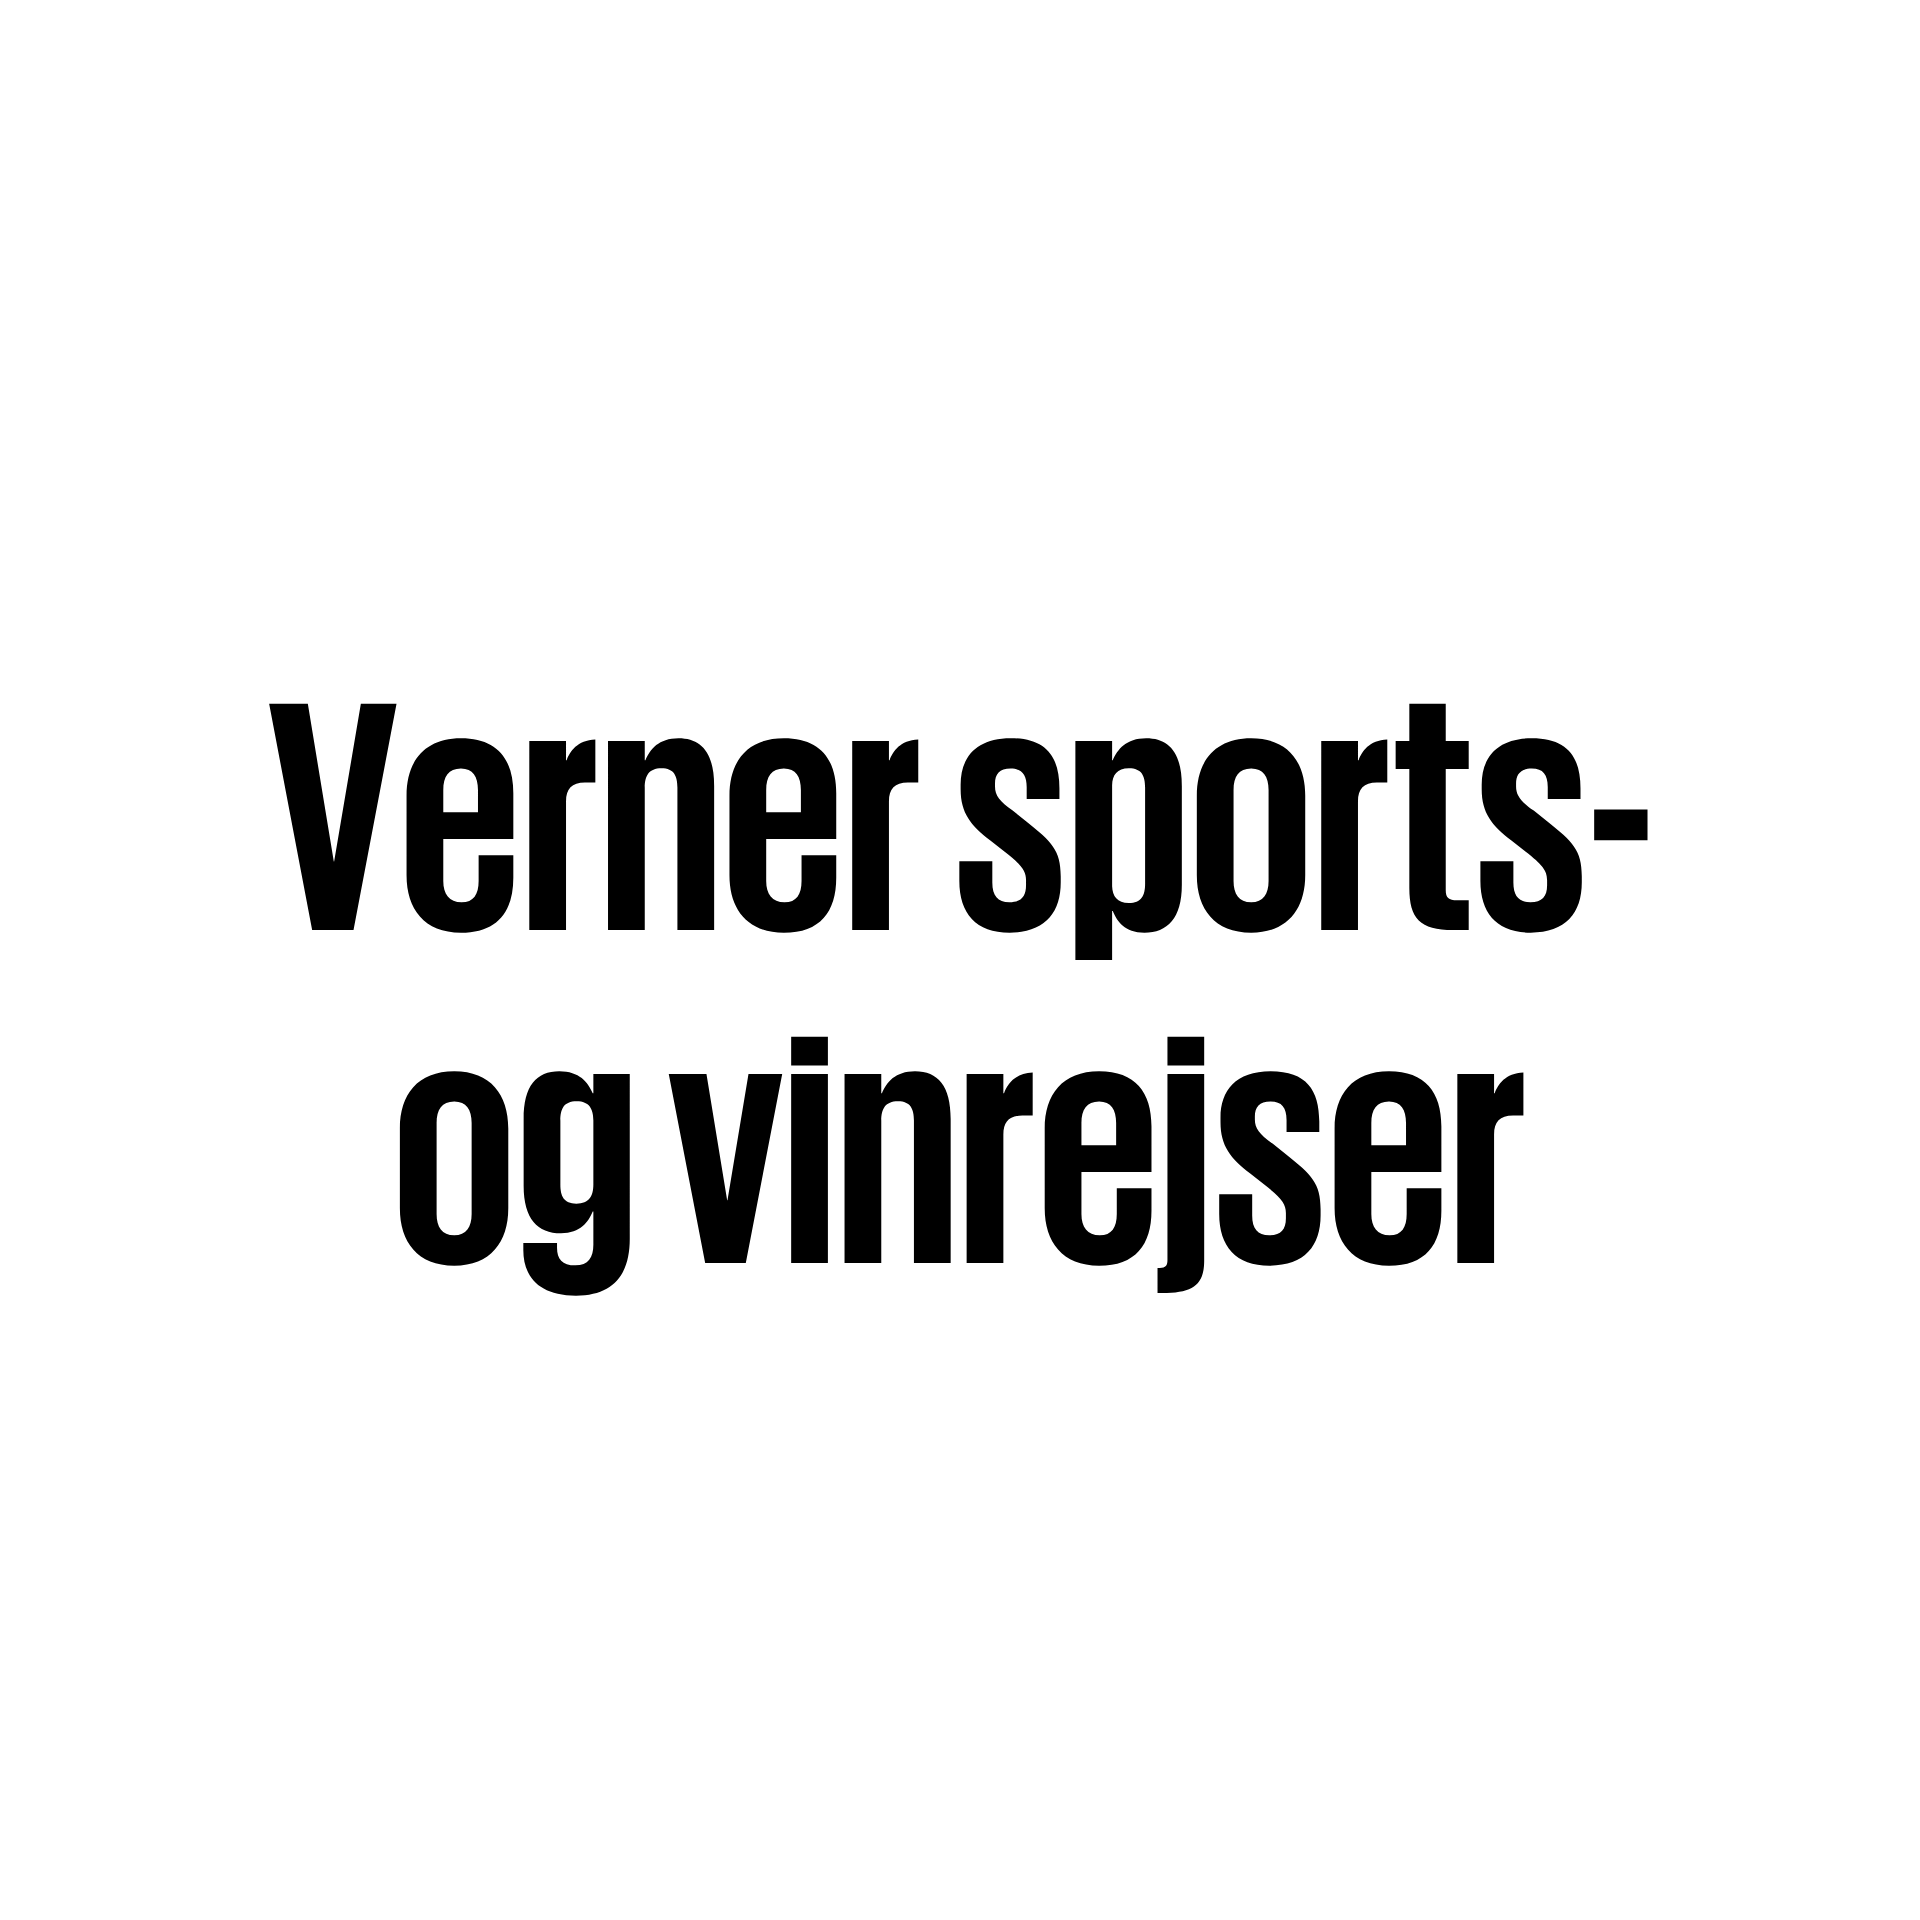 Verner sports- og vinrejser.png